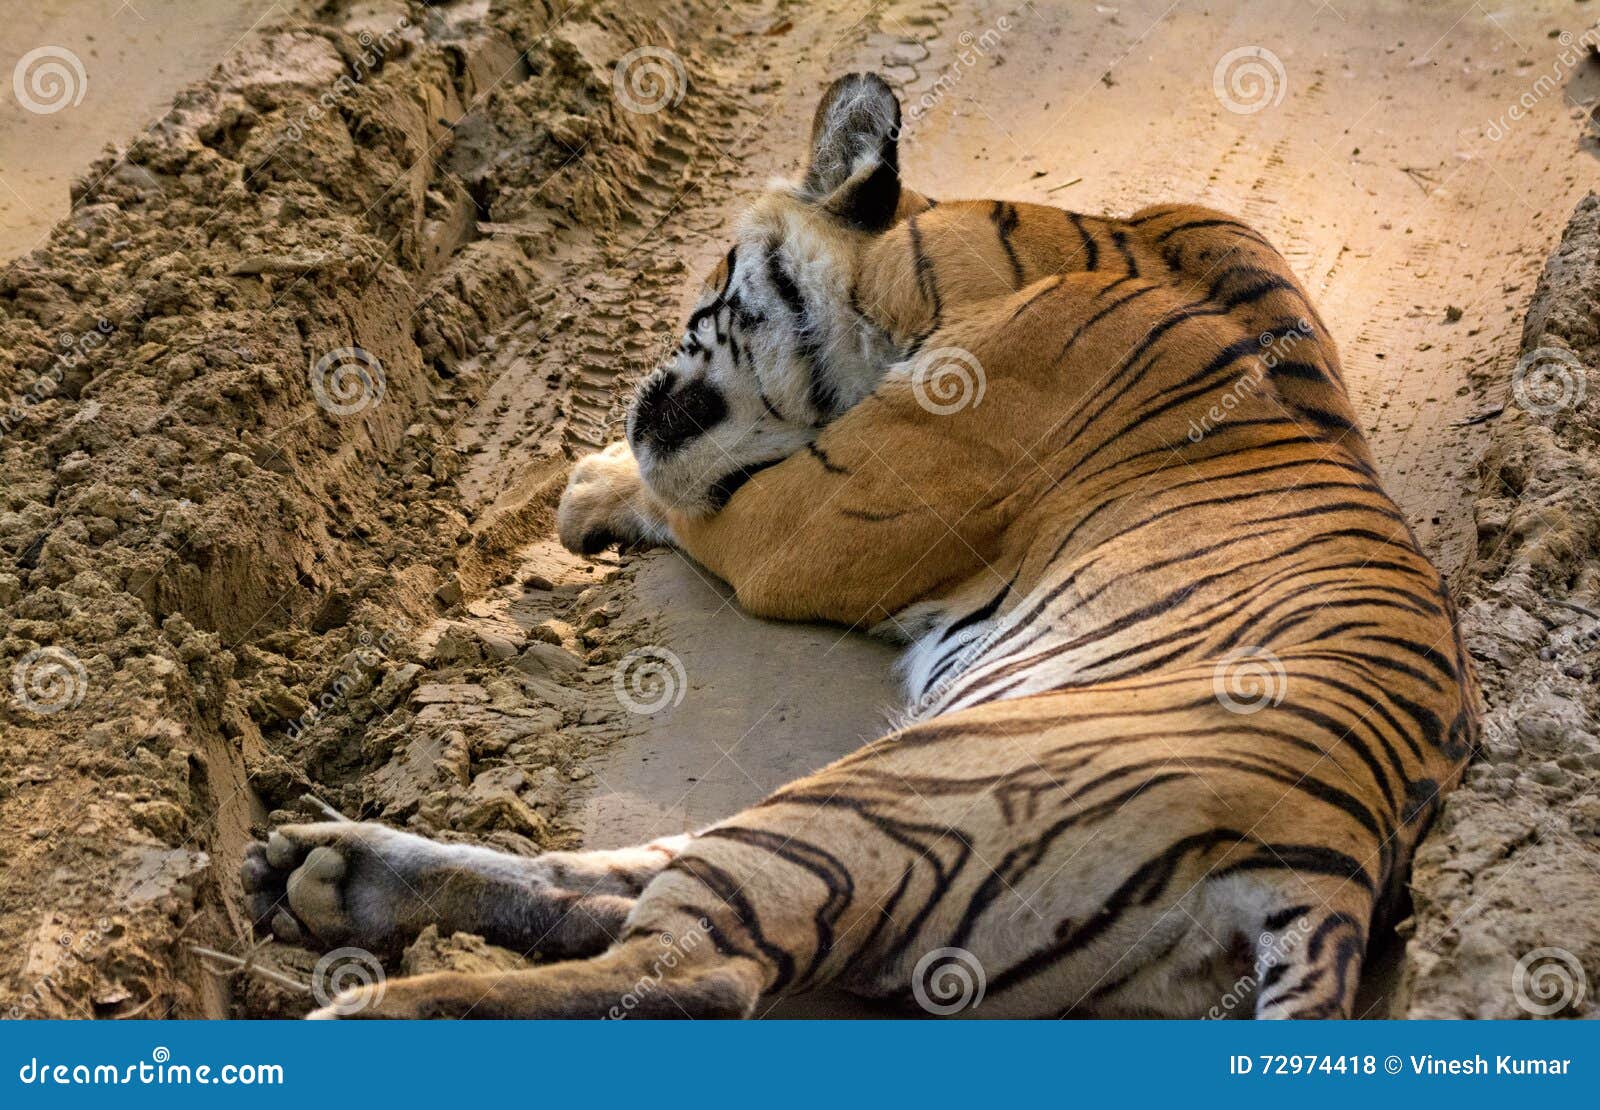 resting wild tigress